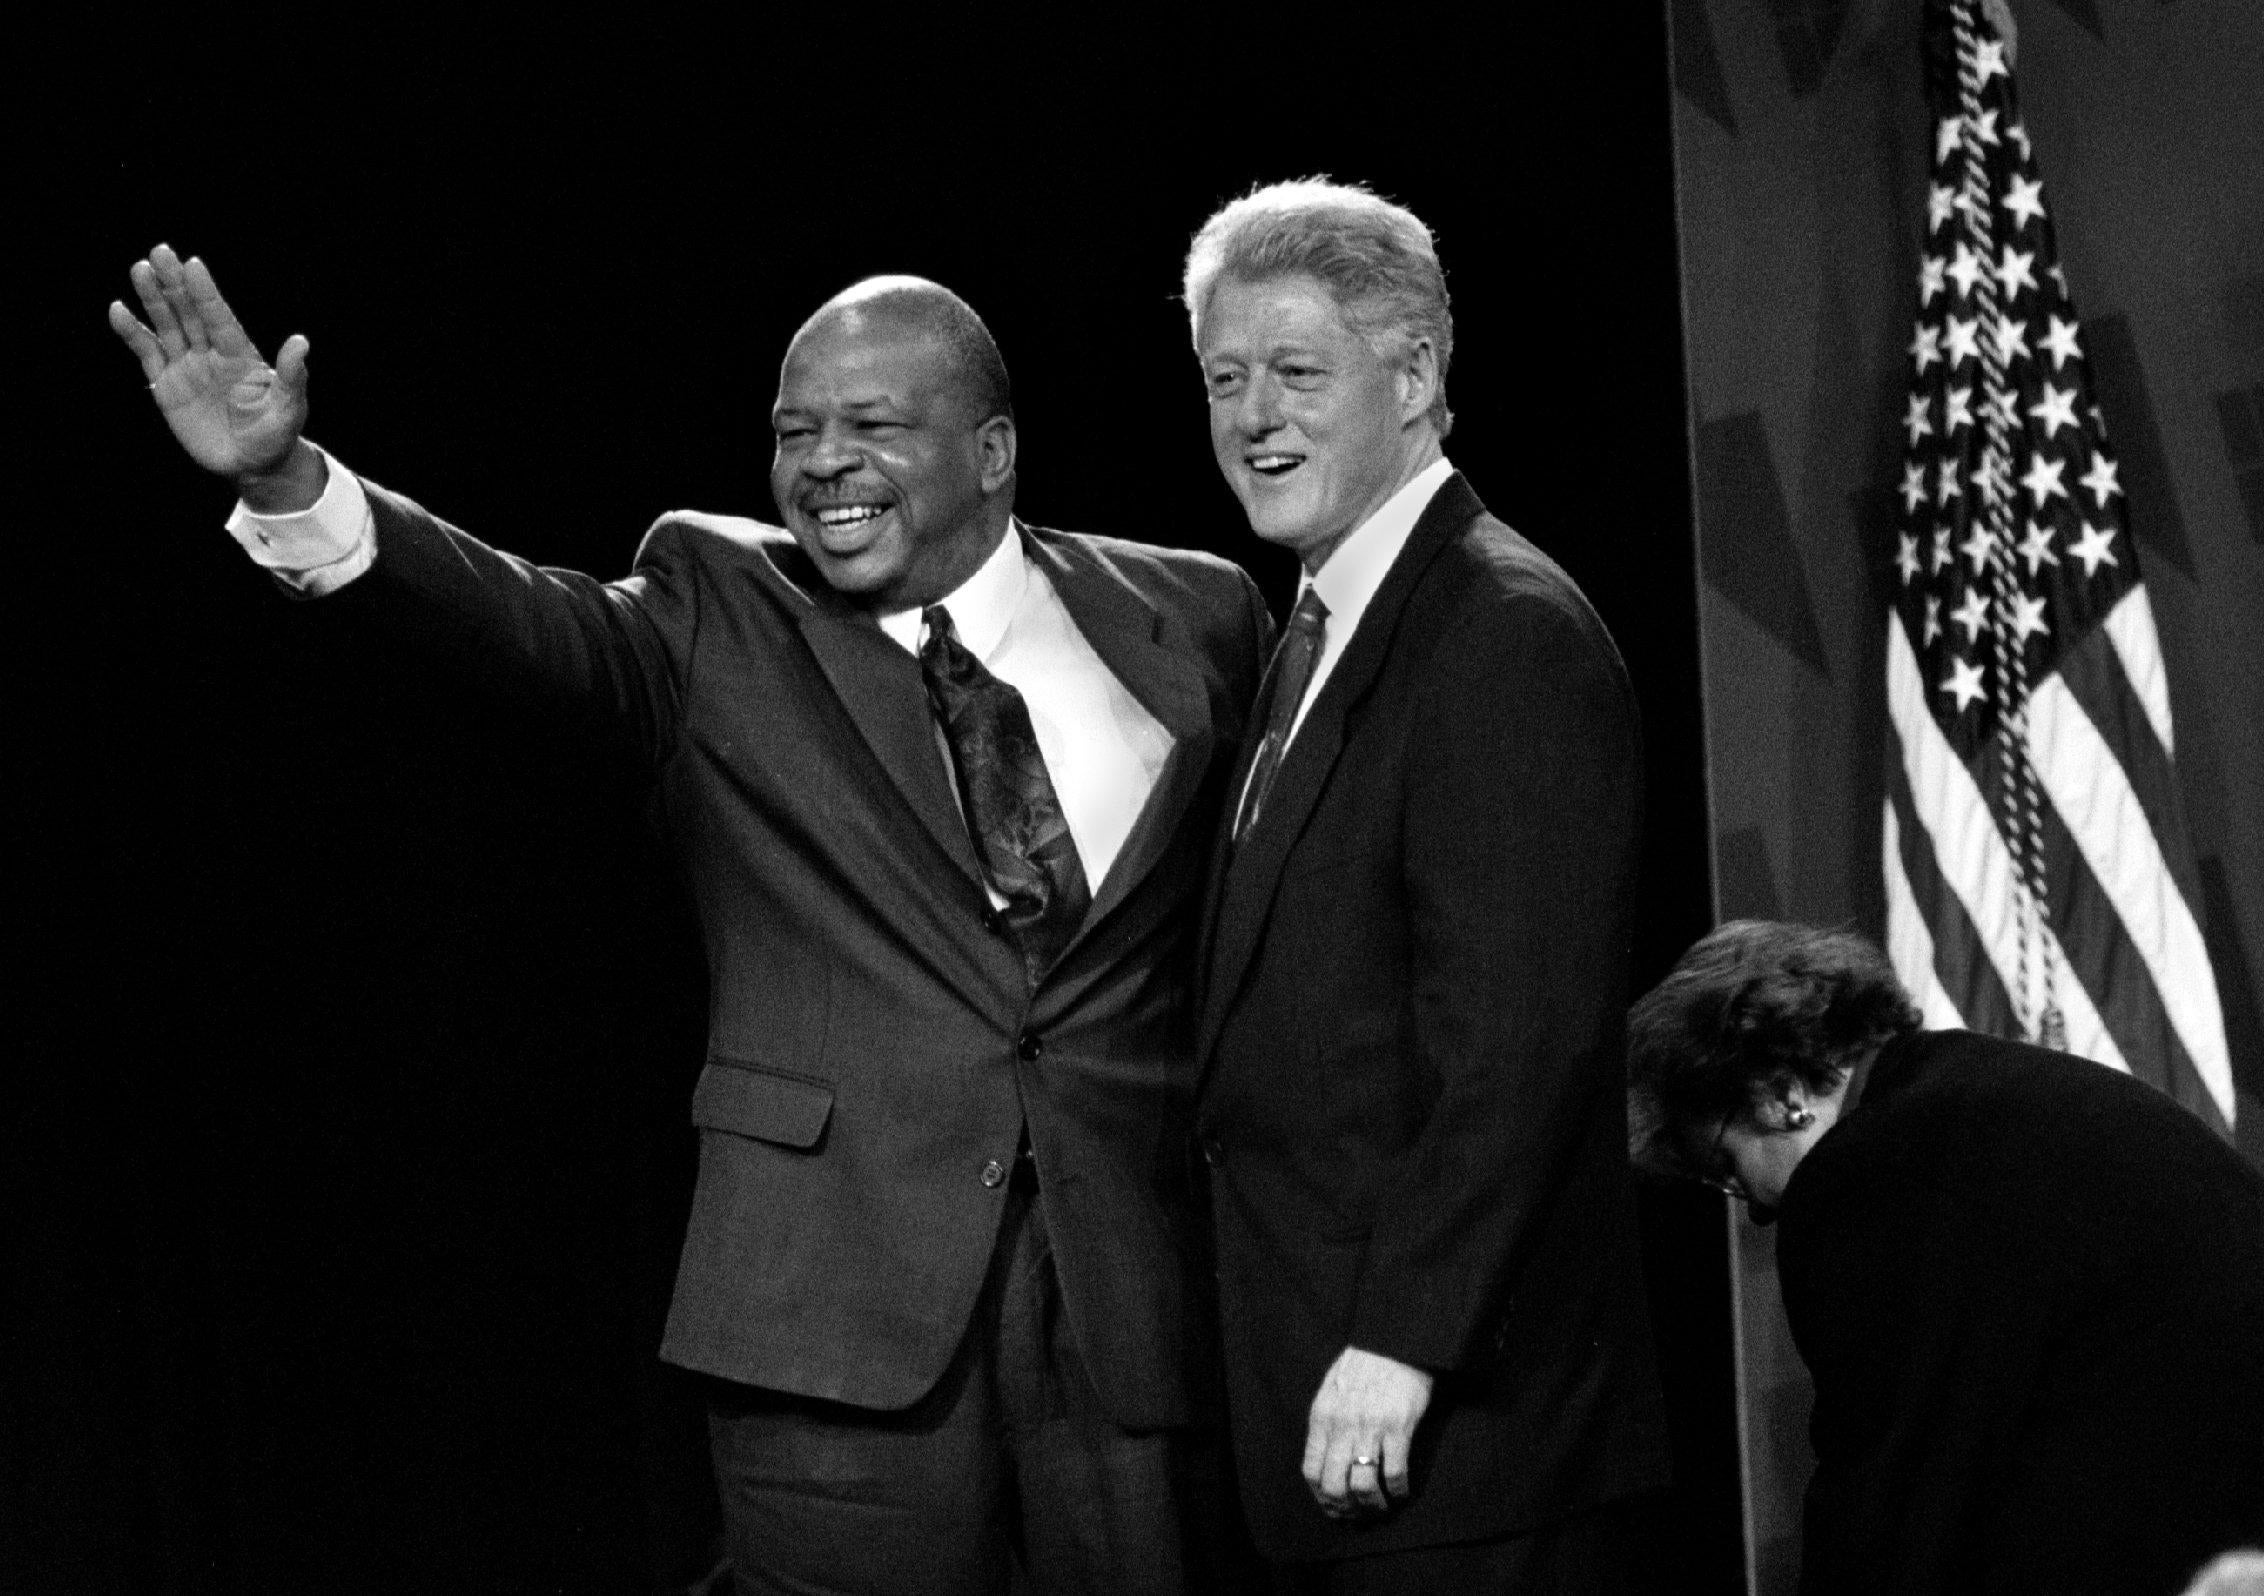 &#13;
Bill Clinton and Elijah Cummings in Baltimore in 1998 &#13;